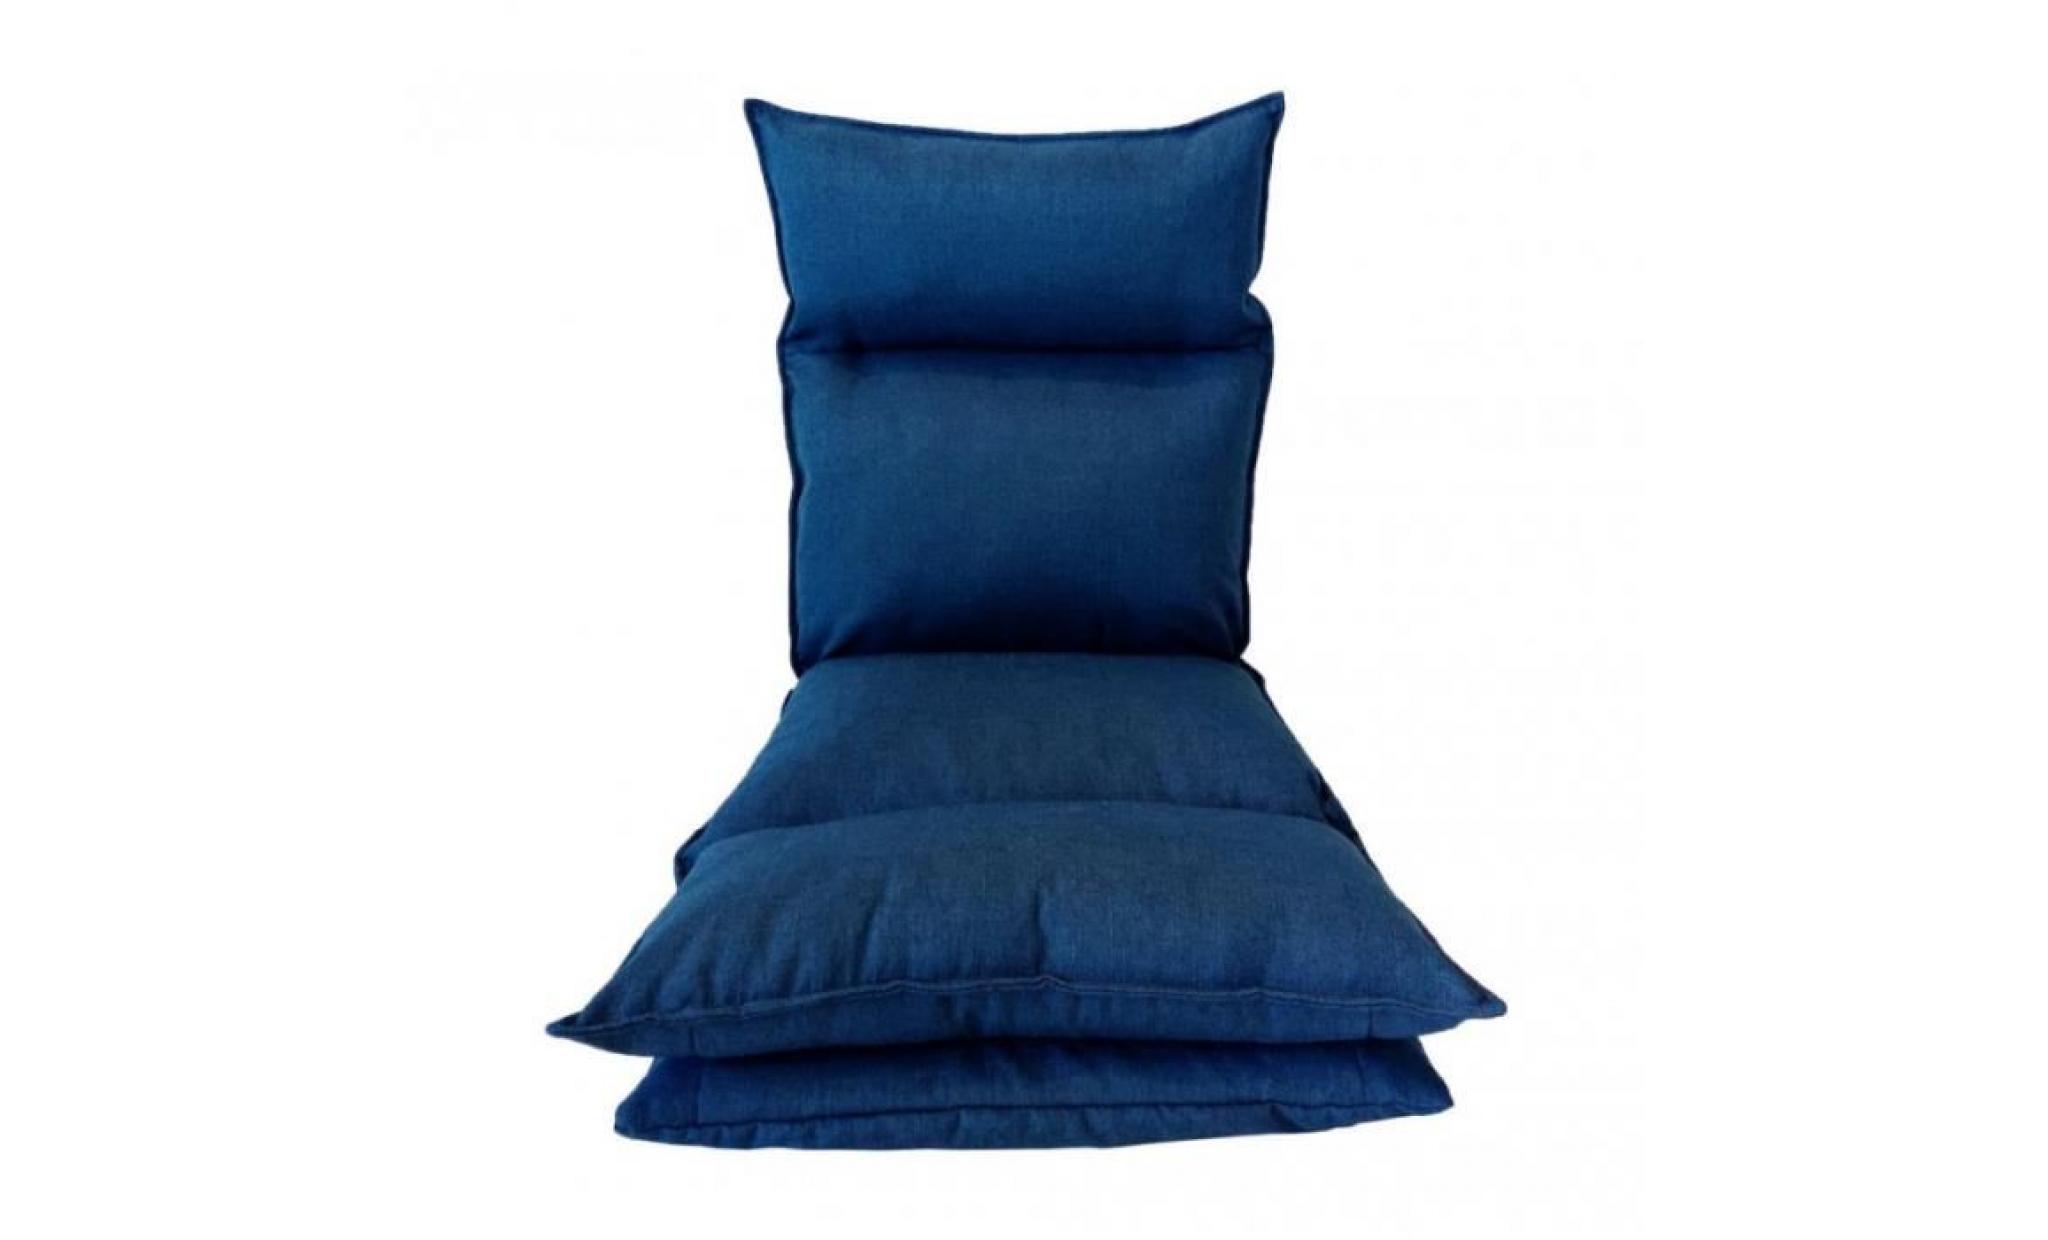 rebecca mobili chaise de méditation fauteuil yoga bleué métal polyester relax